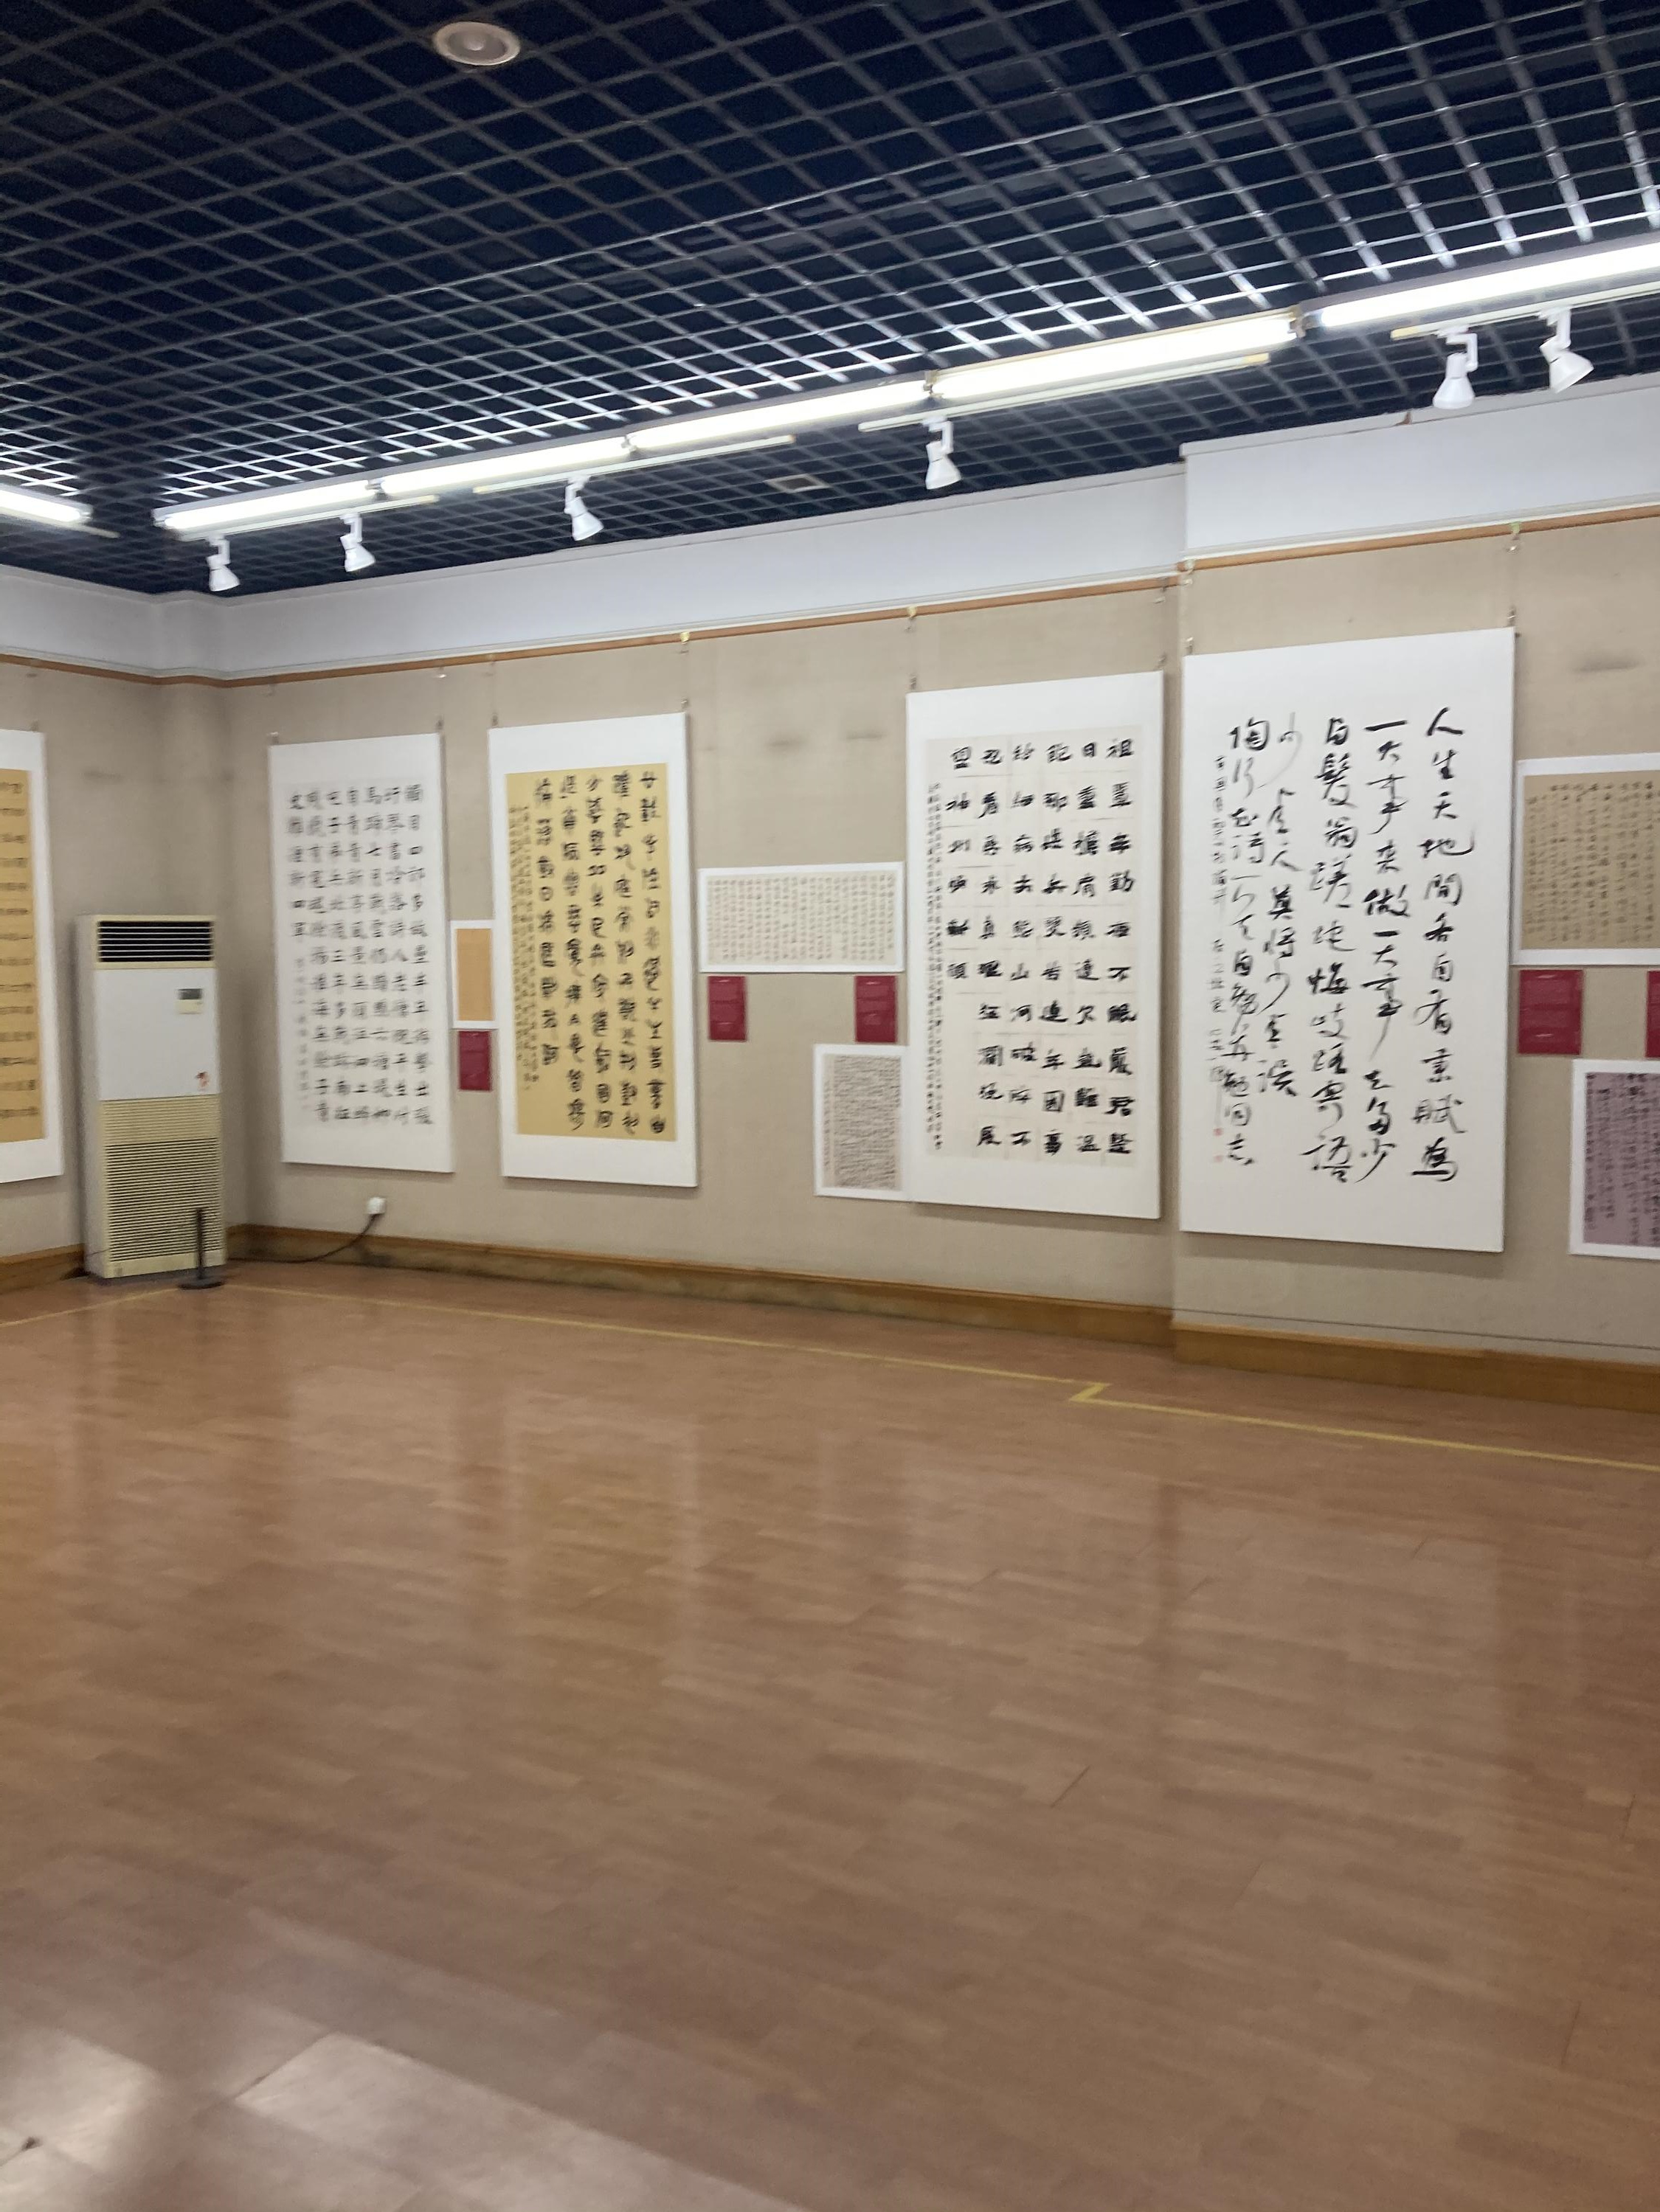 安徽省百名书家书写红色家书红色诗抄作品展在合肥市亚明艺术馆举行